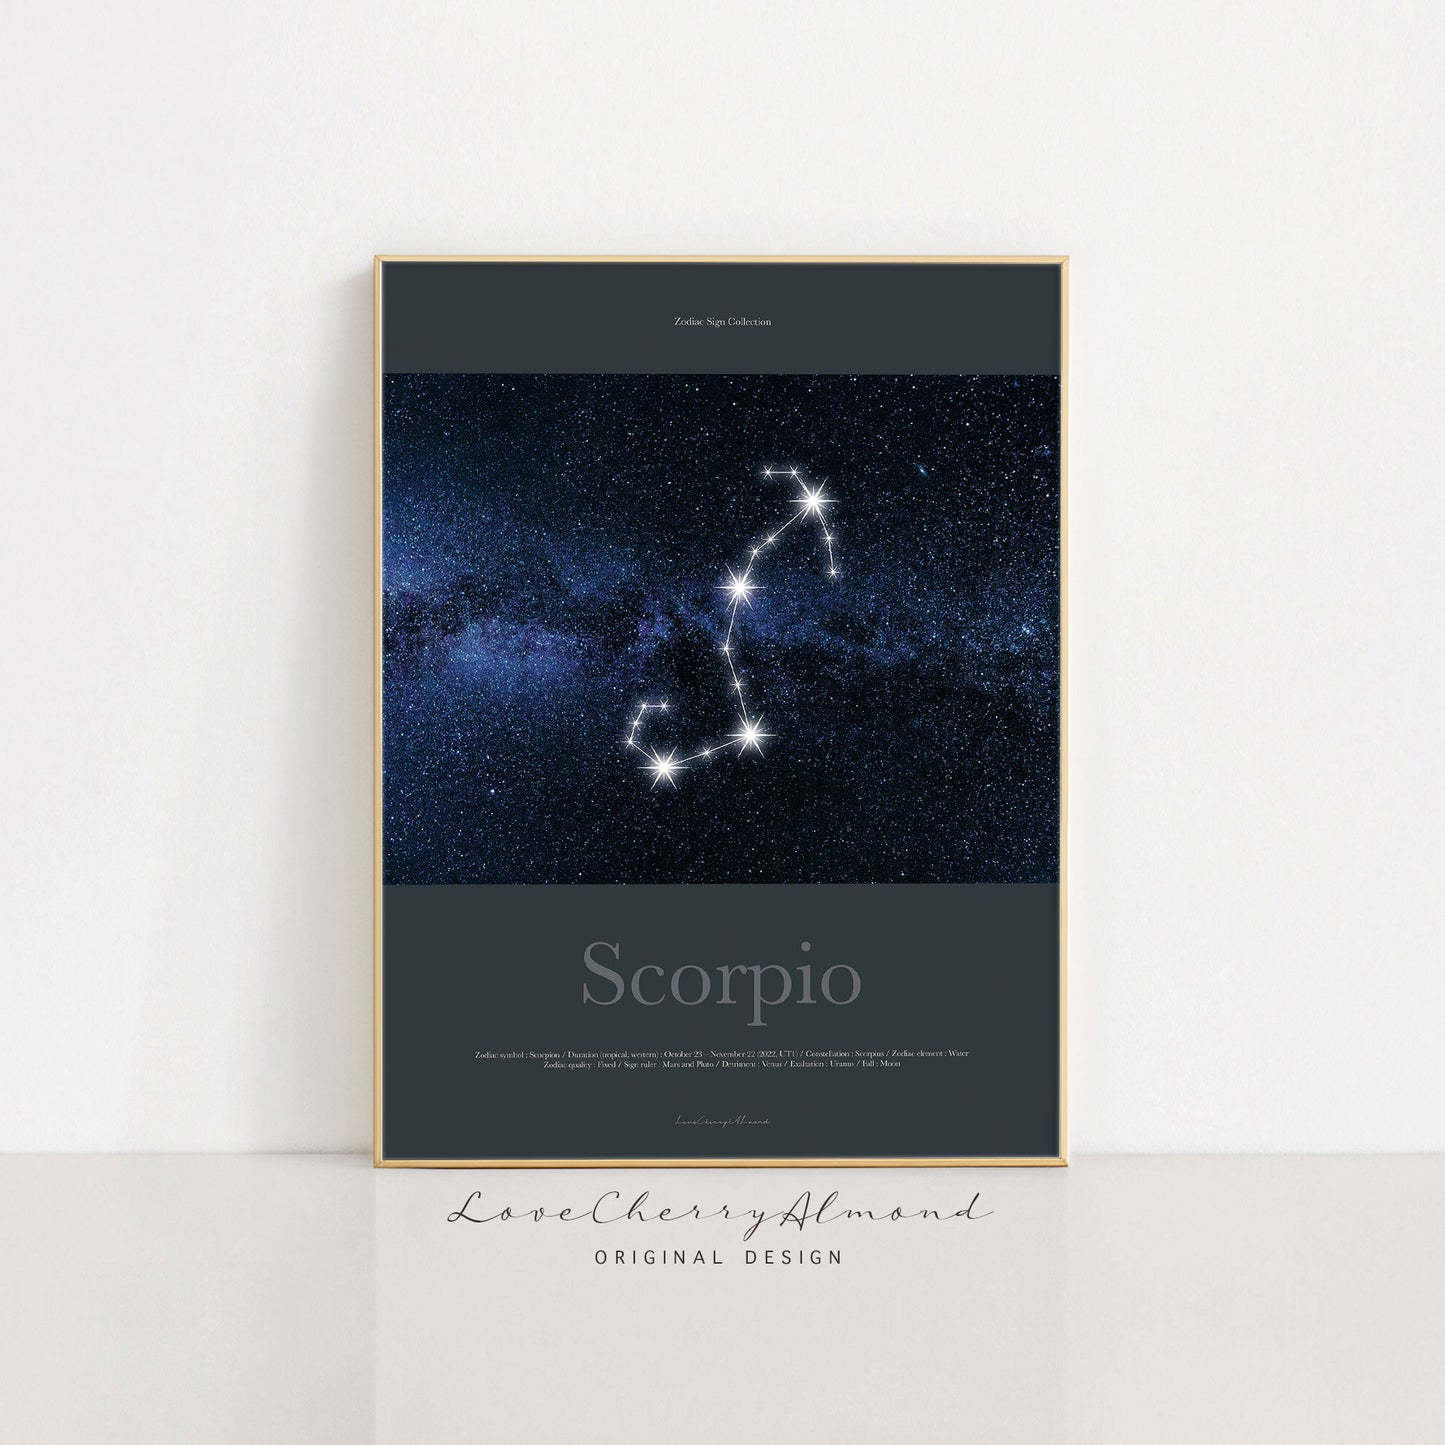 Zodiac Sign Collection "Scorpio"